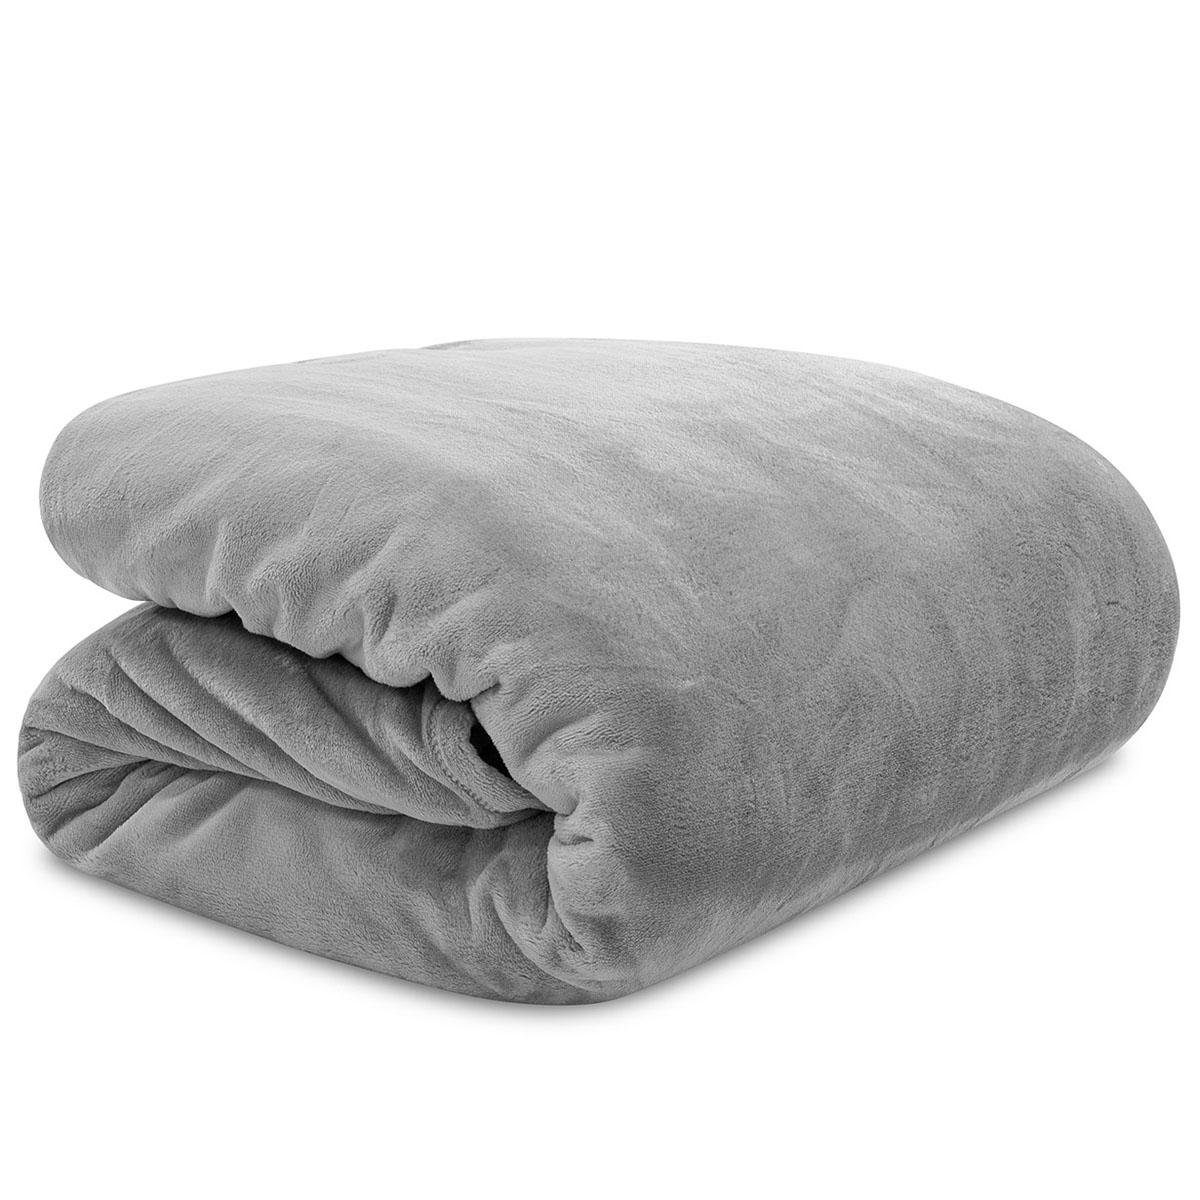 Ralph Lauren Micromink Plush Blanket for $19.99